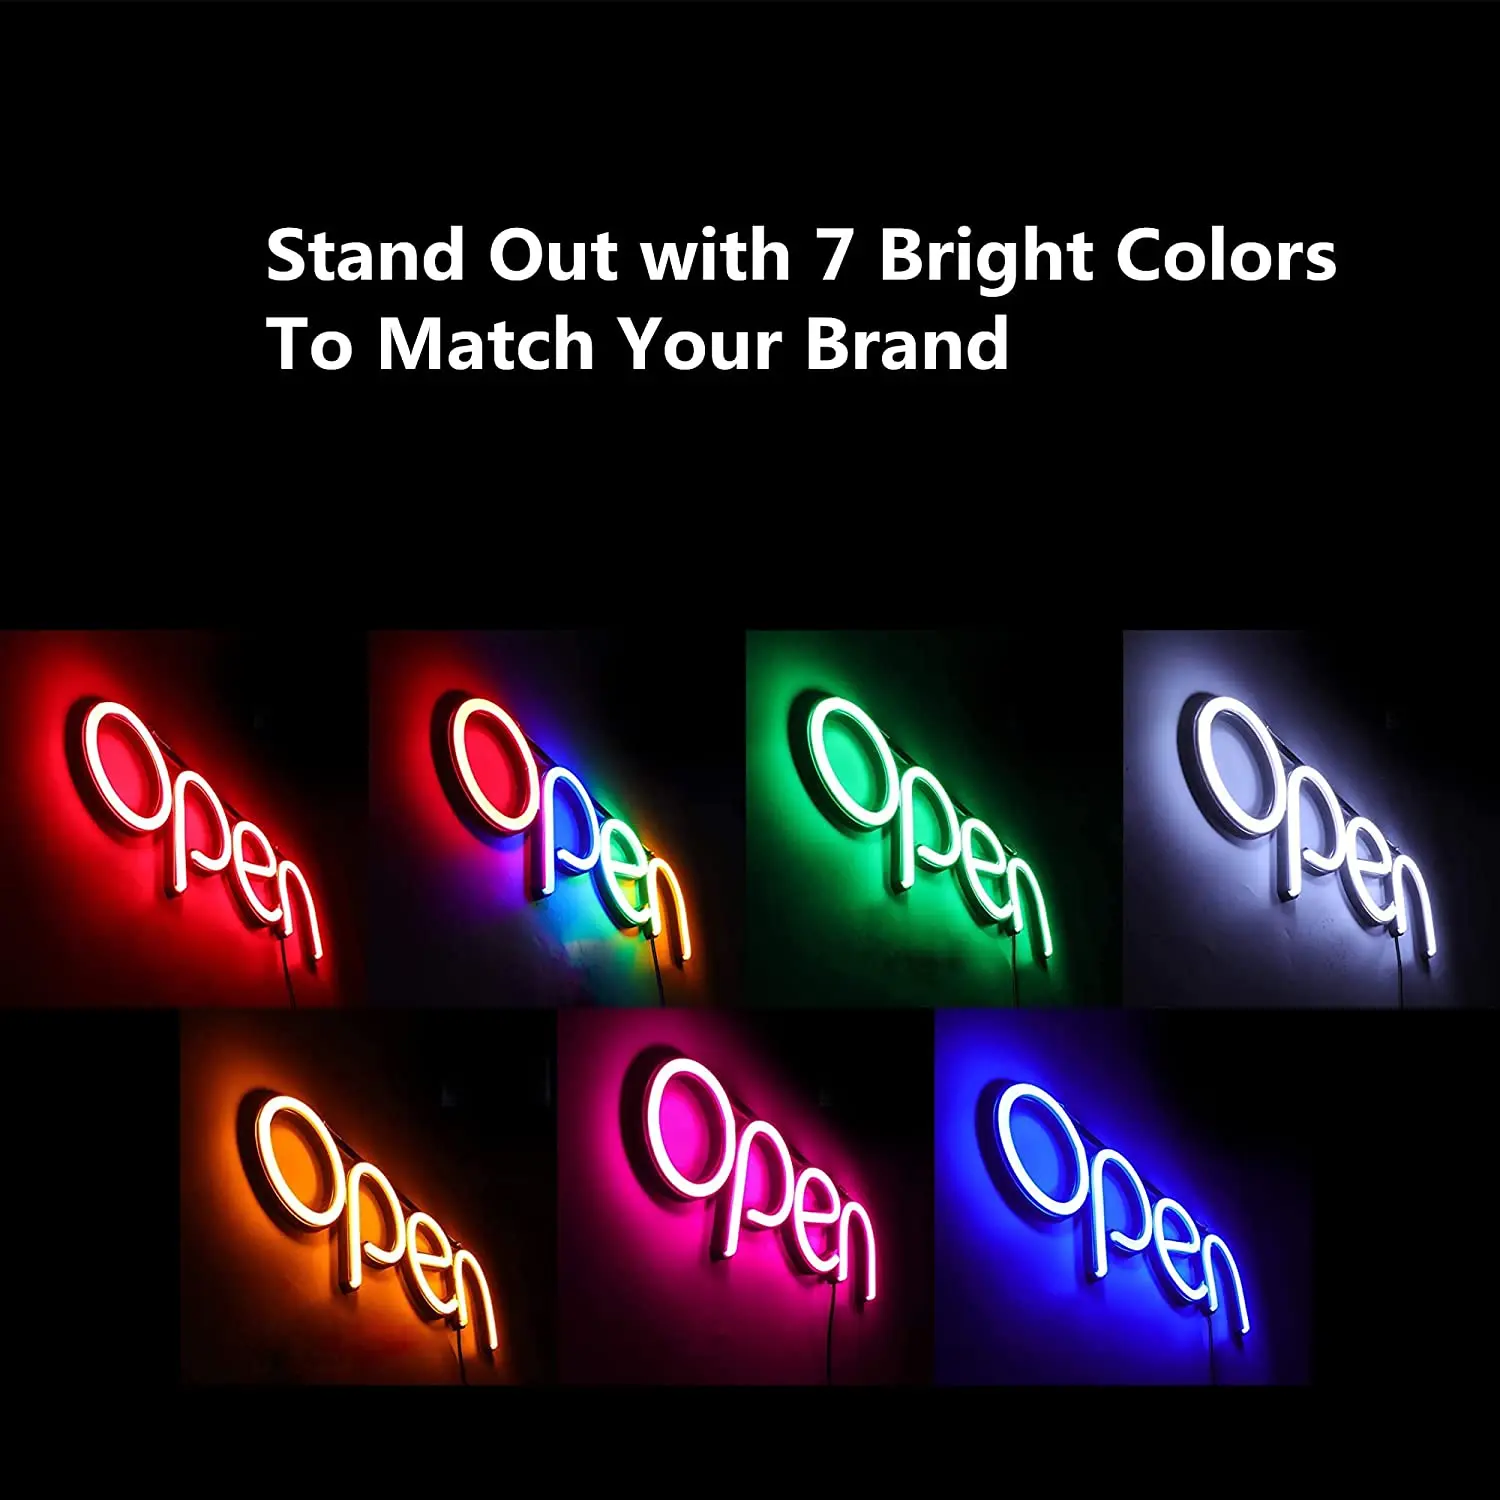 LED Odprite Znak,16x6 V za Podjetja ,Z Open & Zapri Znakom , Idealni za Restavracije, Bar, Salon in Več,24V/1A(Multi)